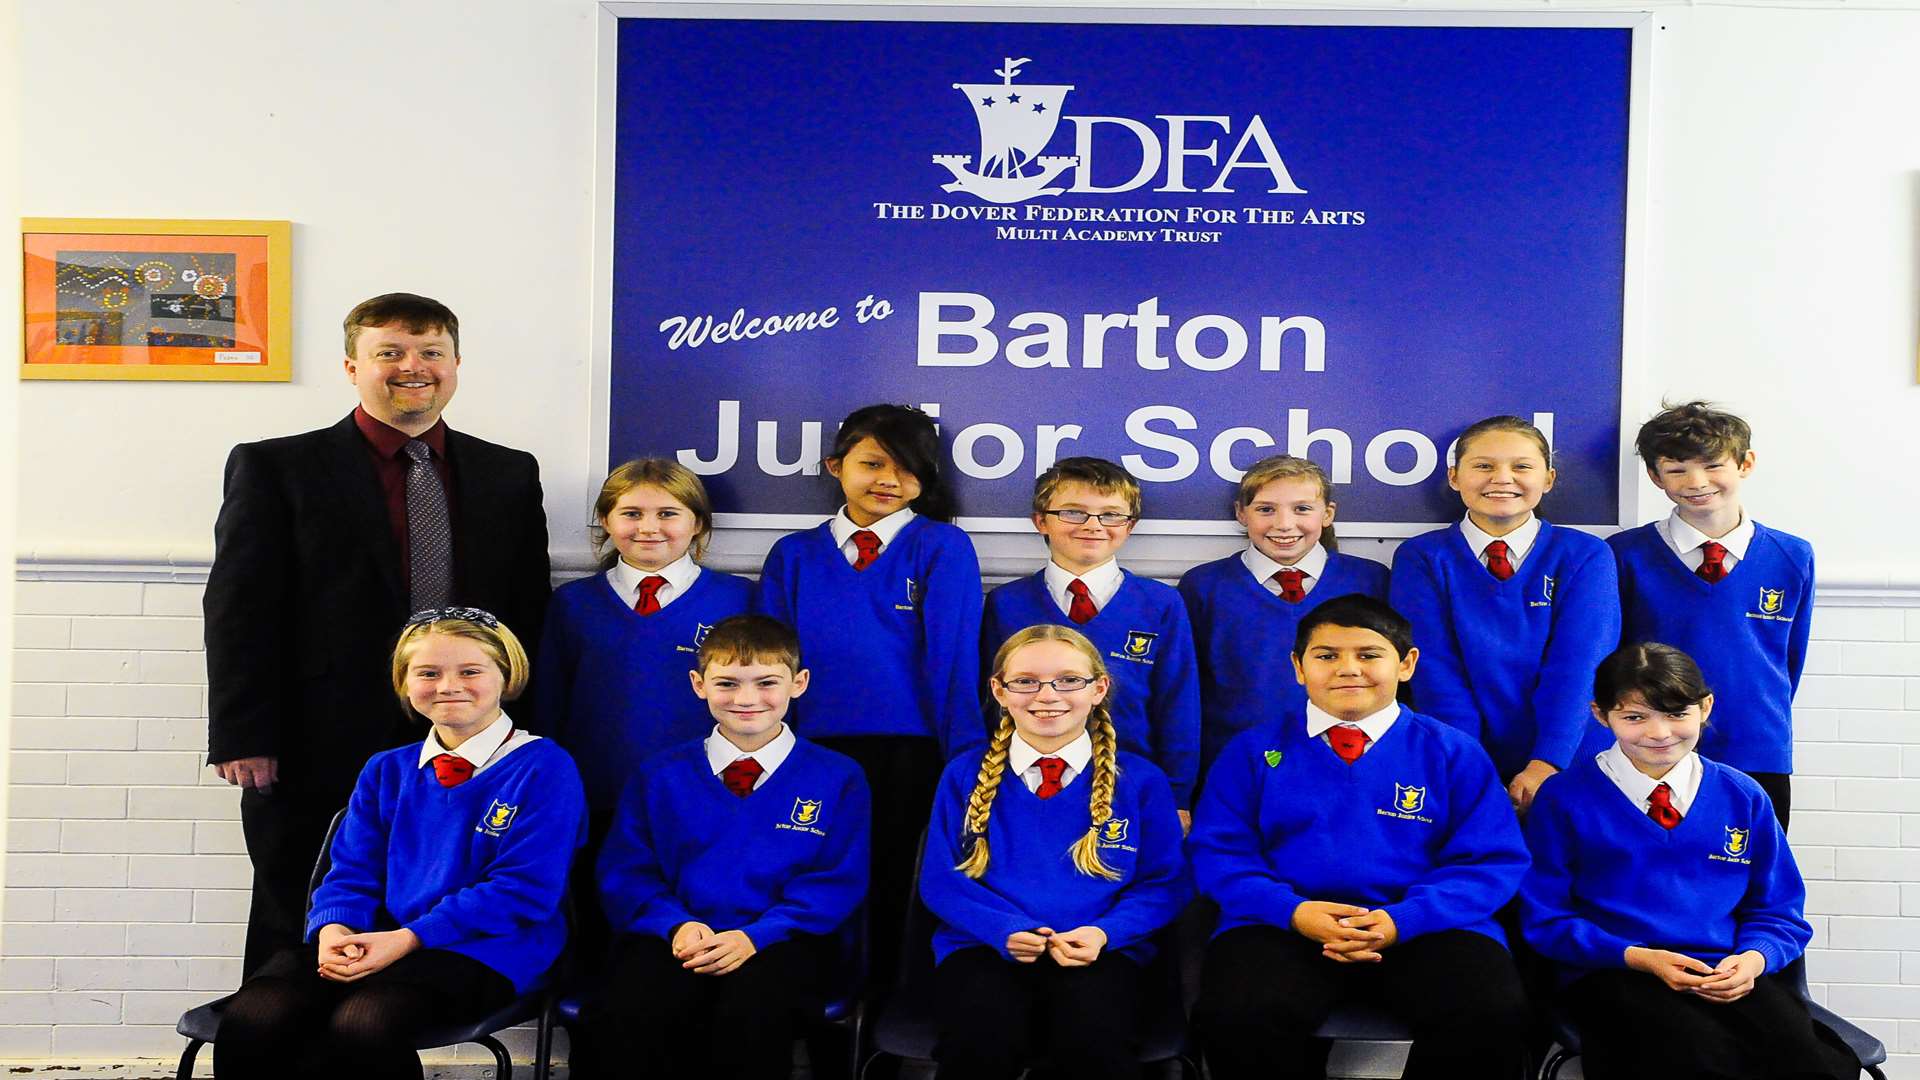 Principal, David Meades, with pupils from Barton Junior School